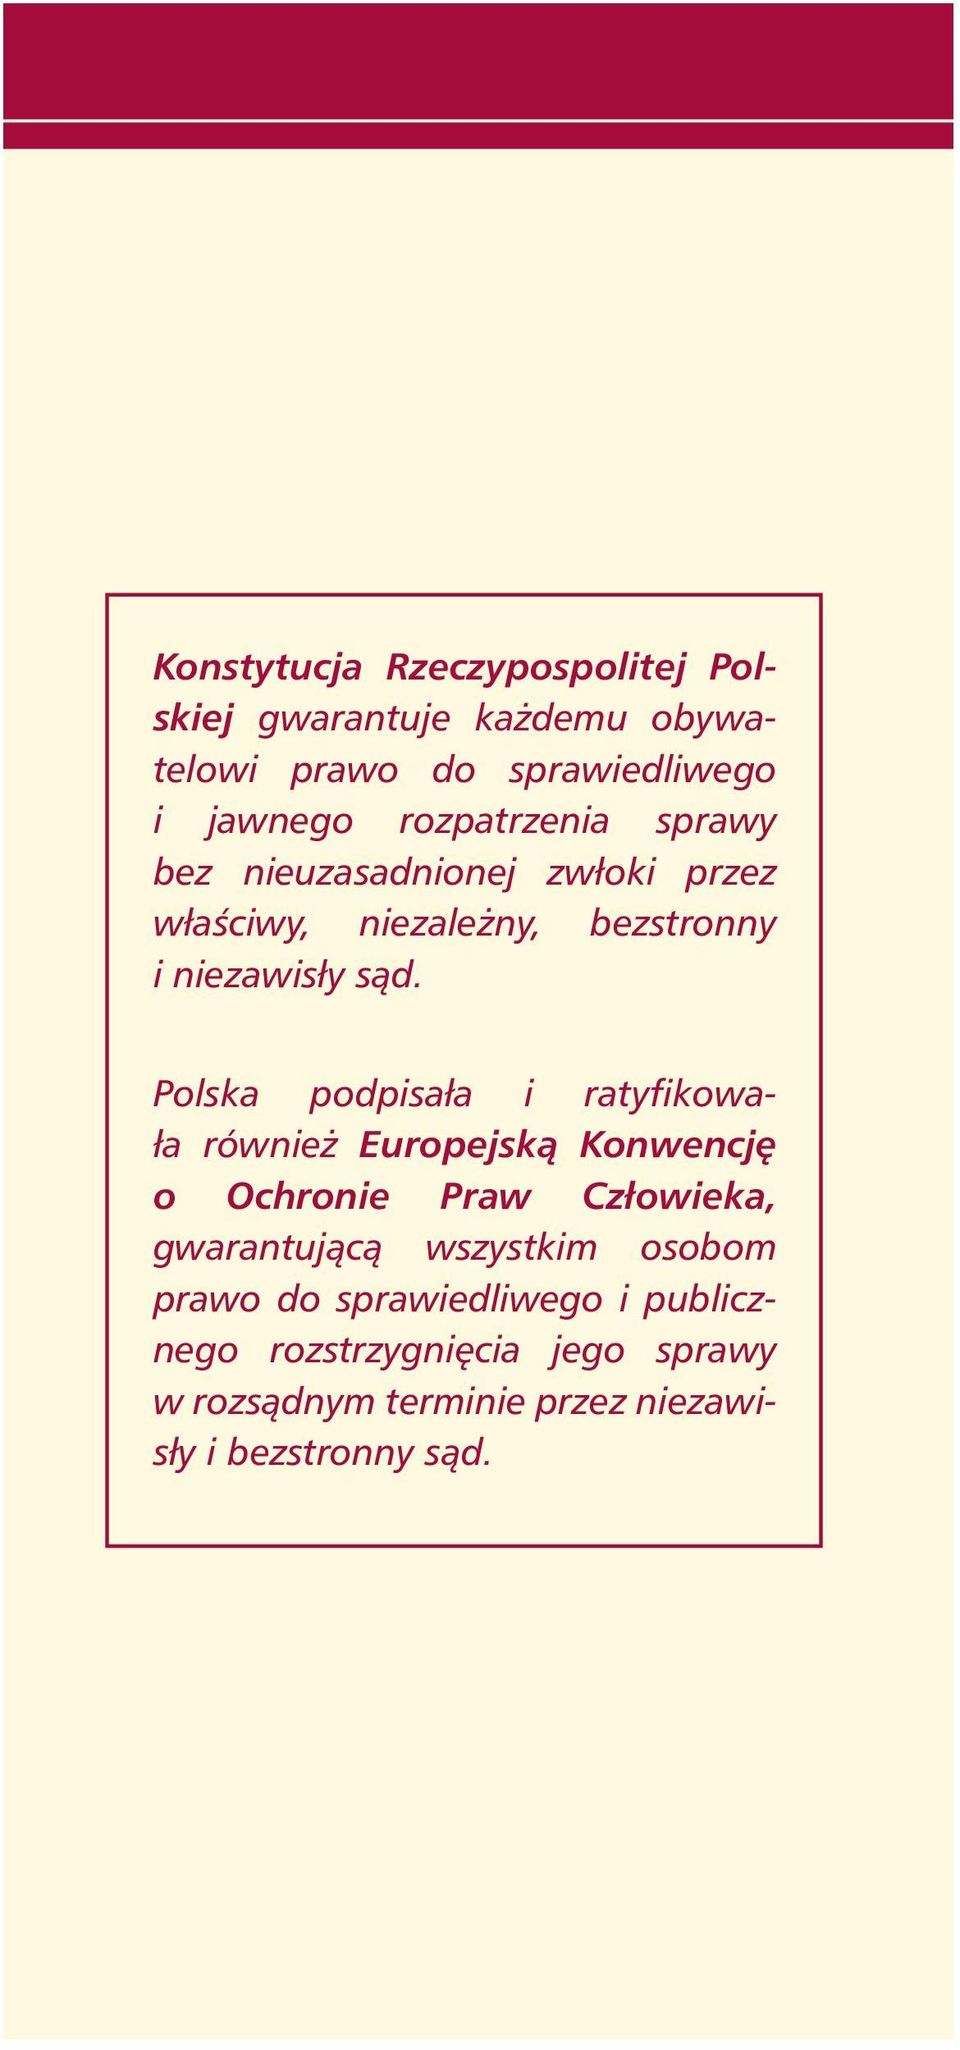 Polska podpisała i ratyfikowała równie Europejskà Konwencj o Ochronie Praw Człowieka, gwarantujàcà wszystkim